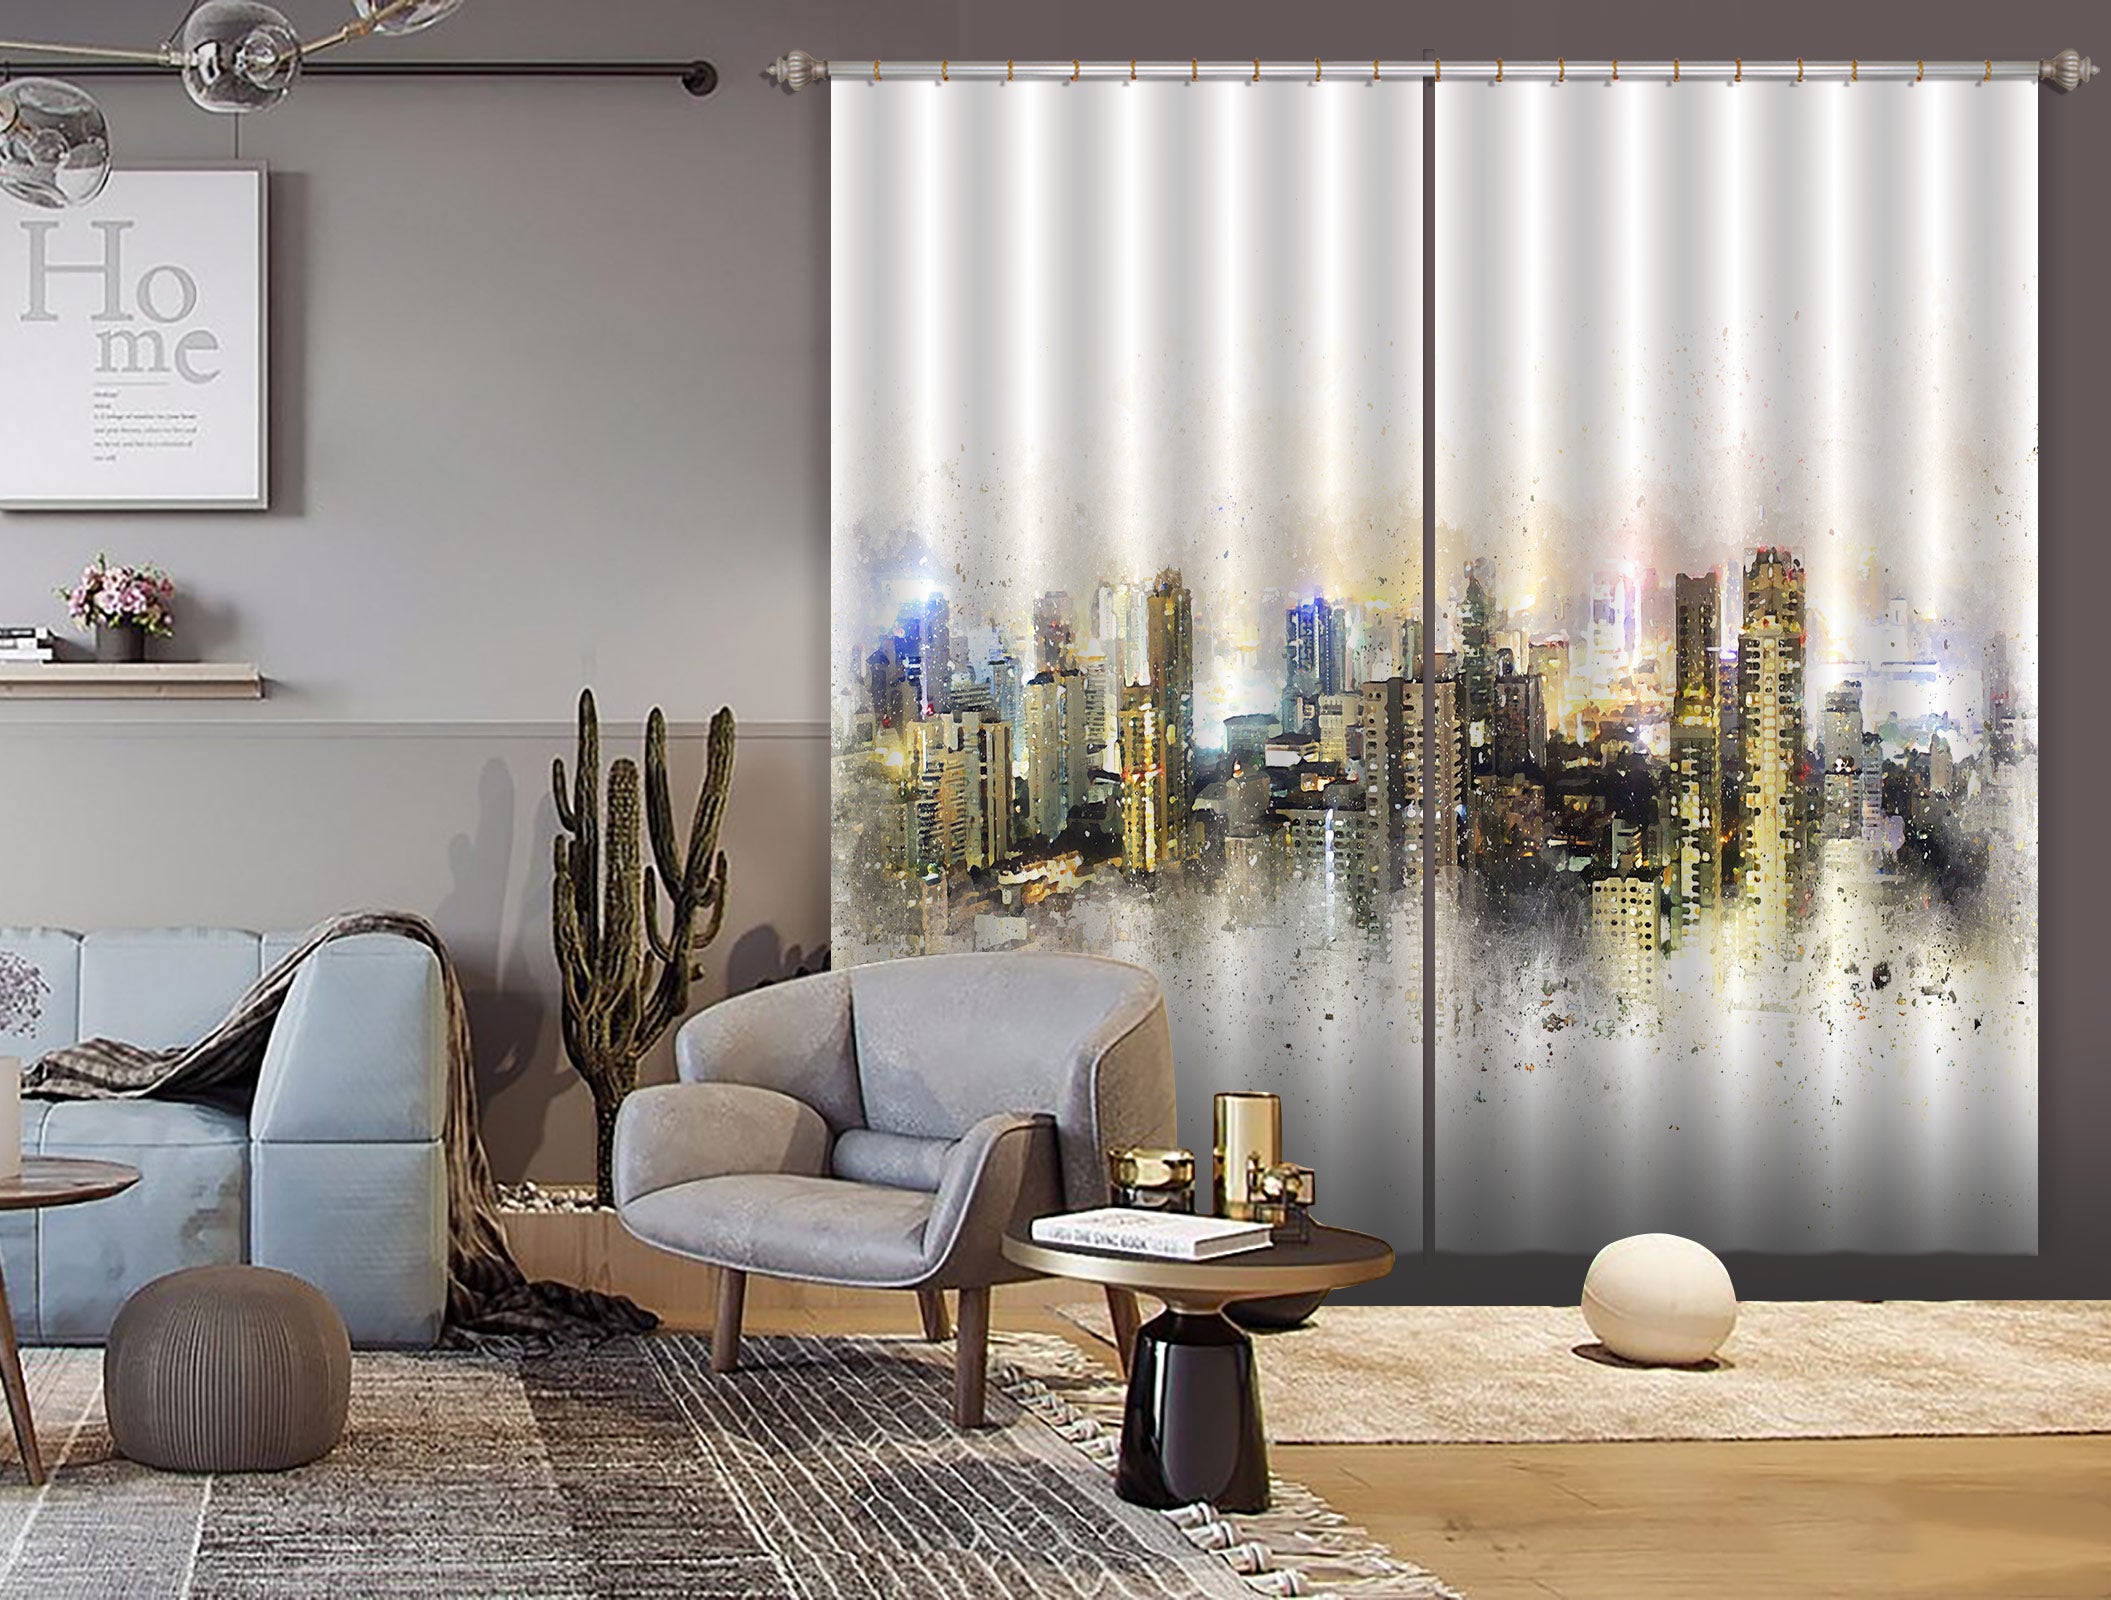 3D Building City 056 Curtains Drapes